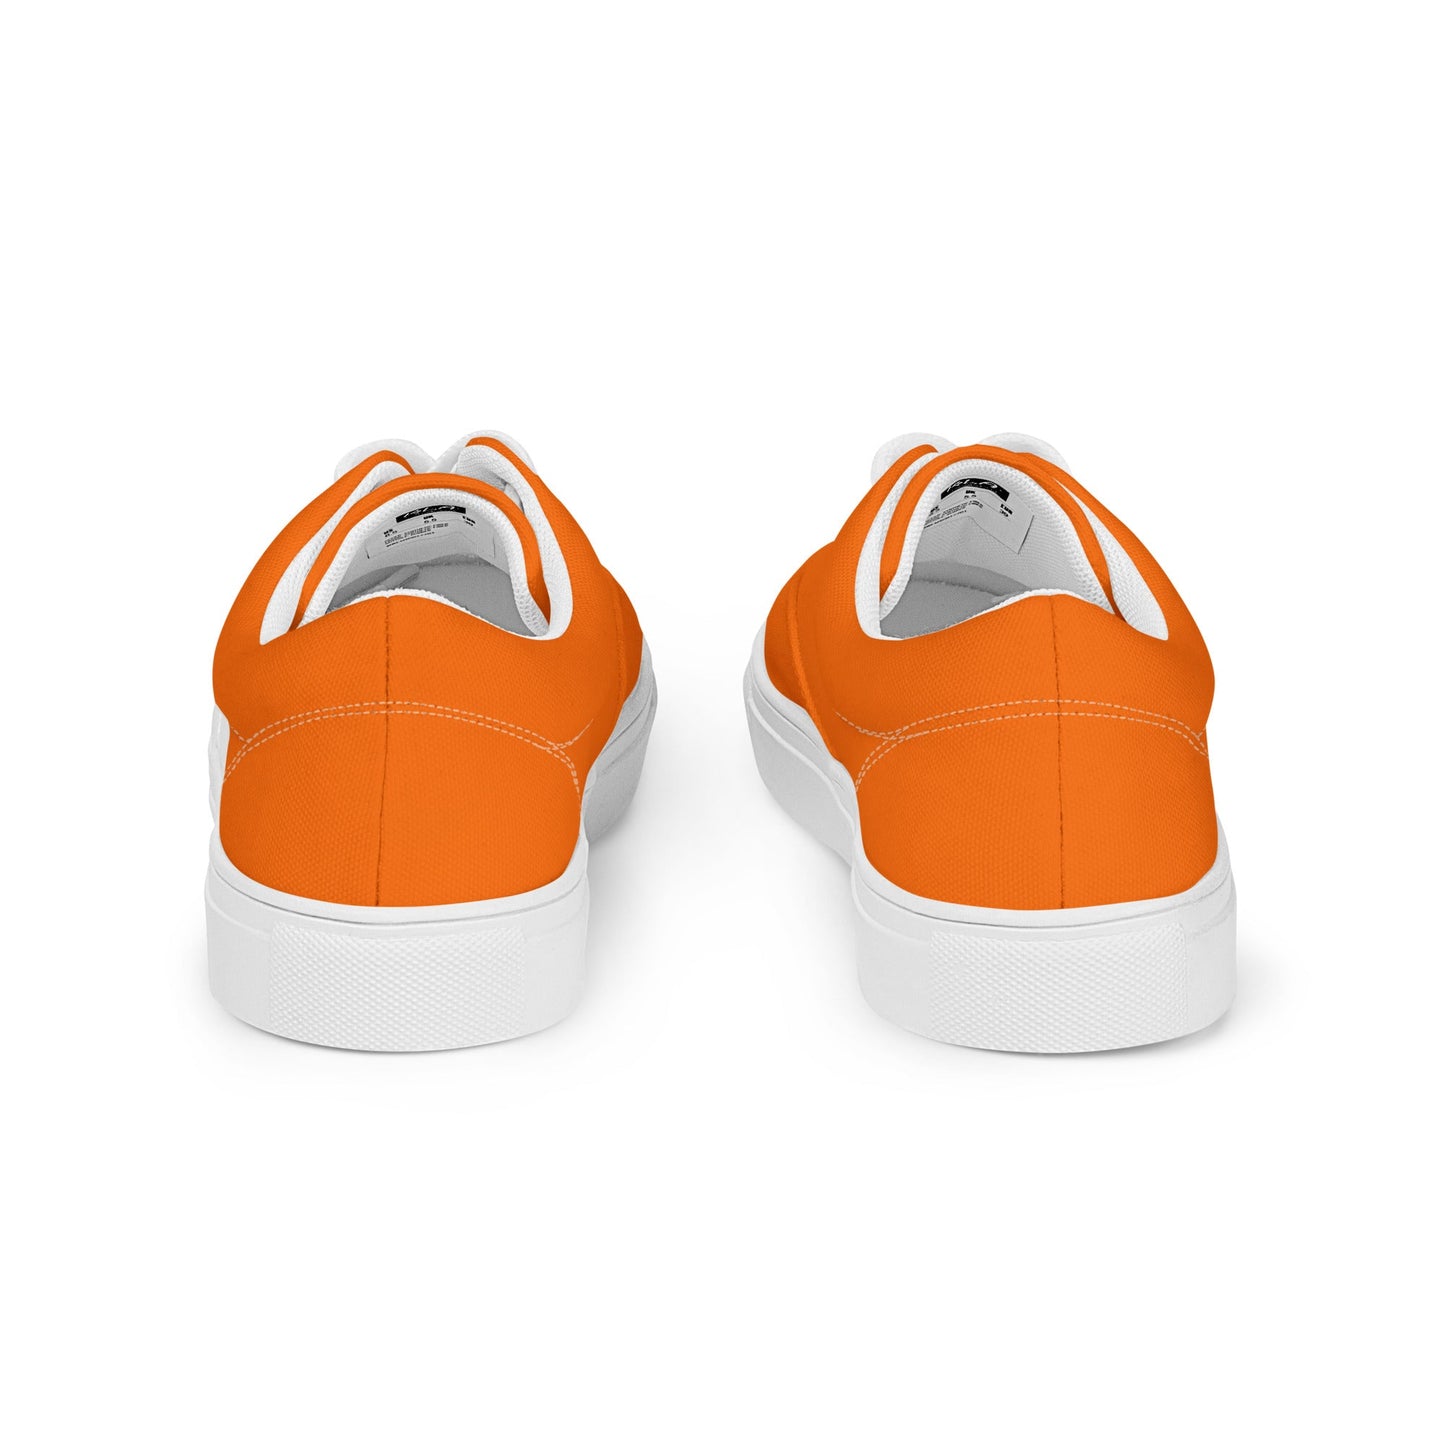 klasneakers Men’s lace-up canvas shoes - Electric Orange